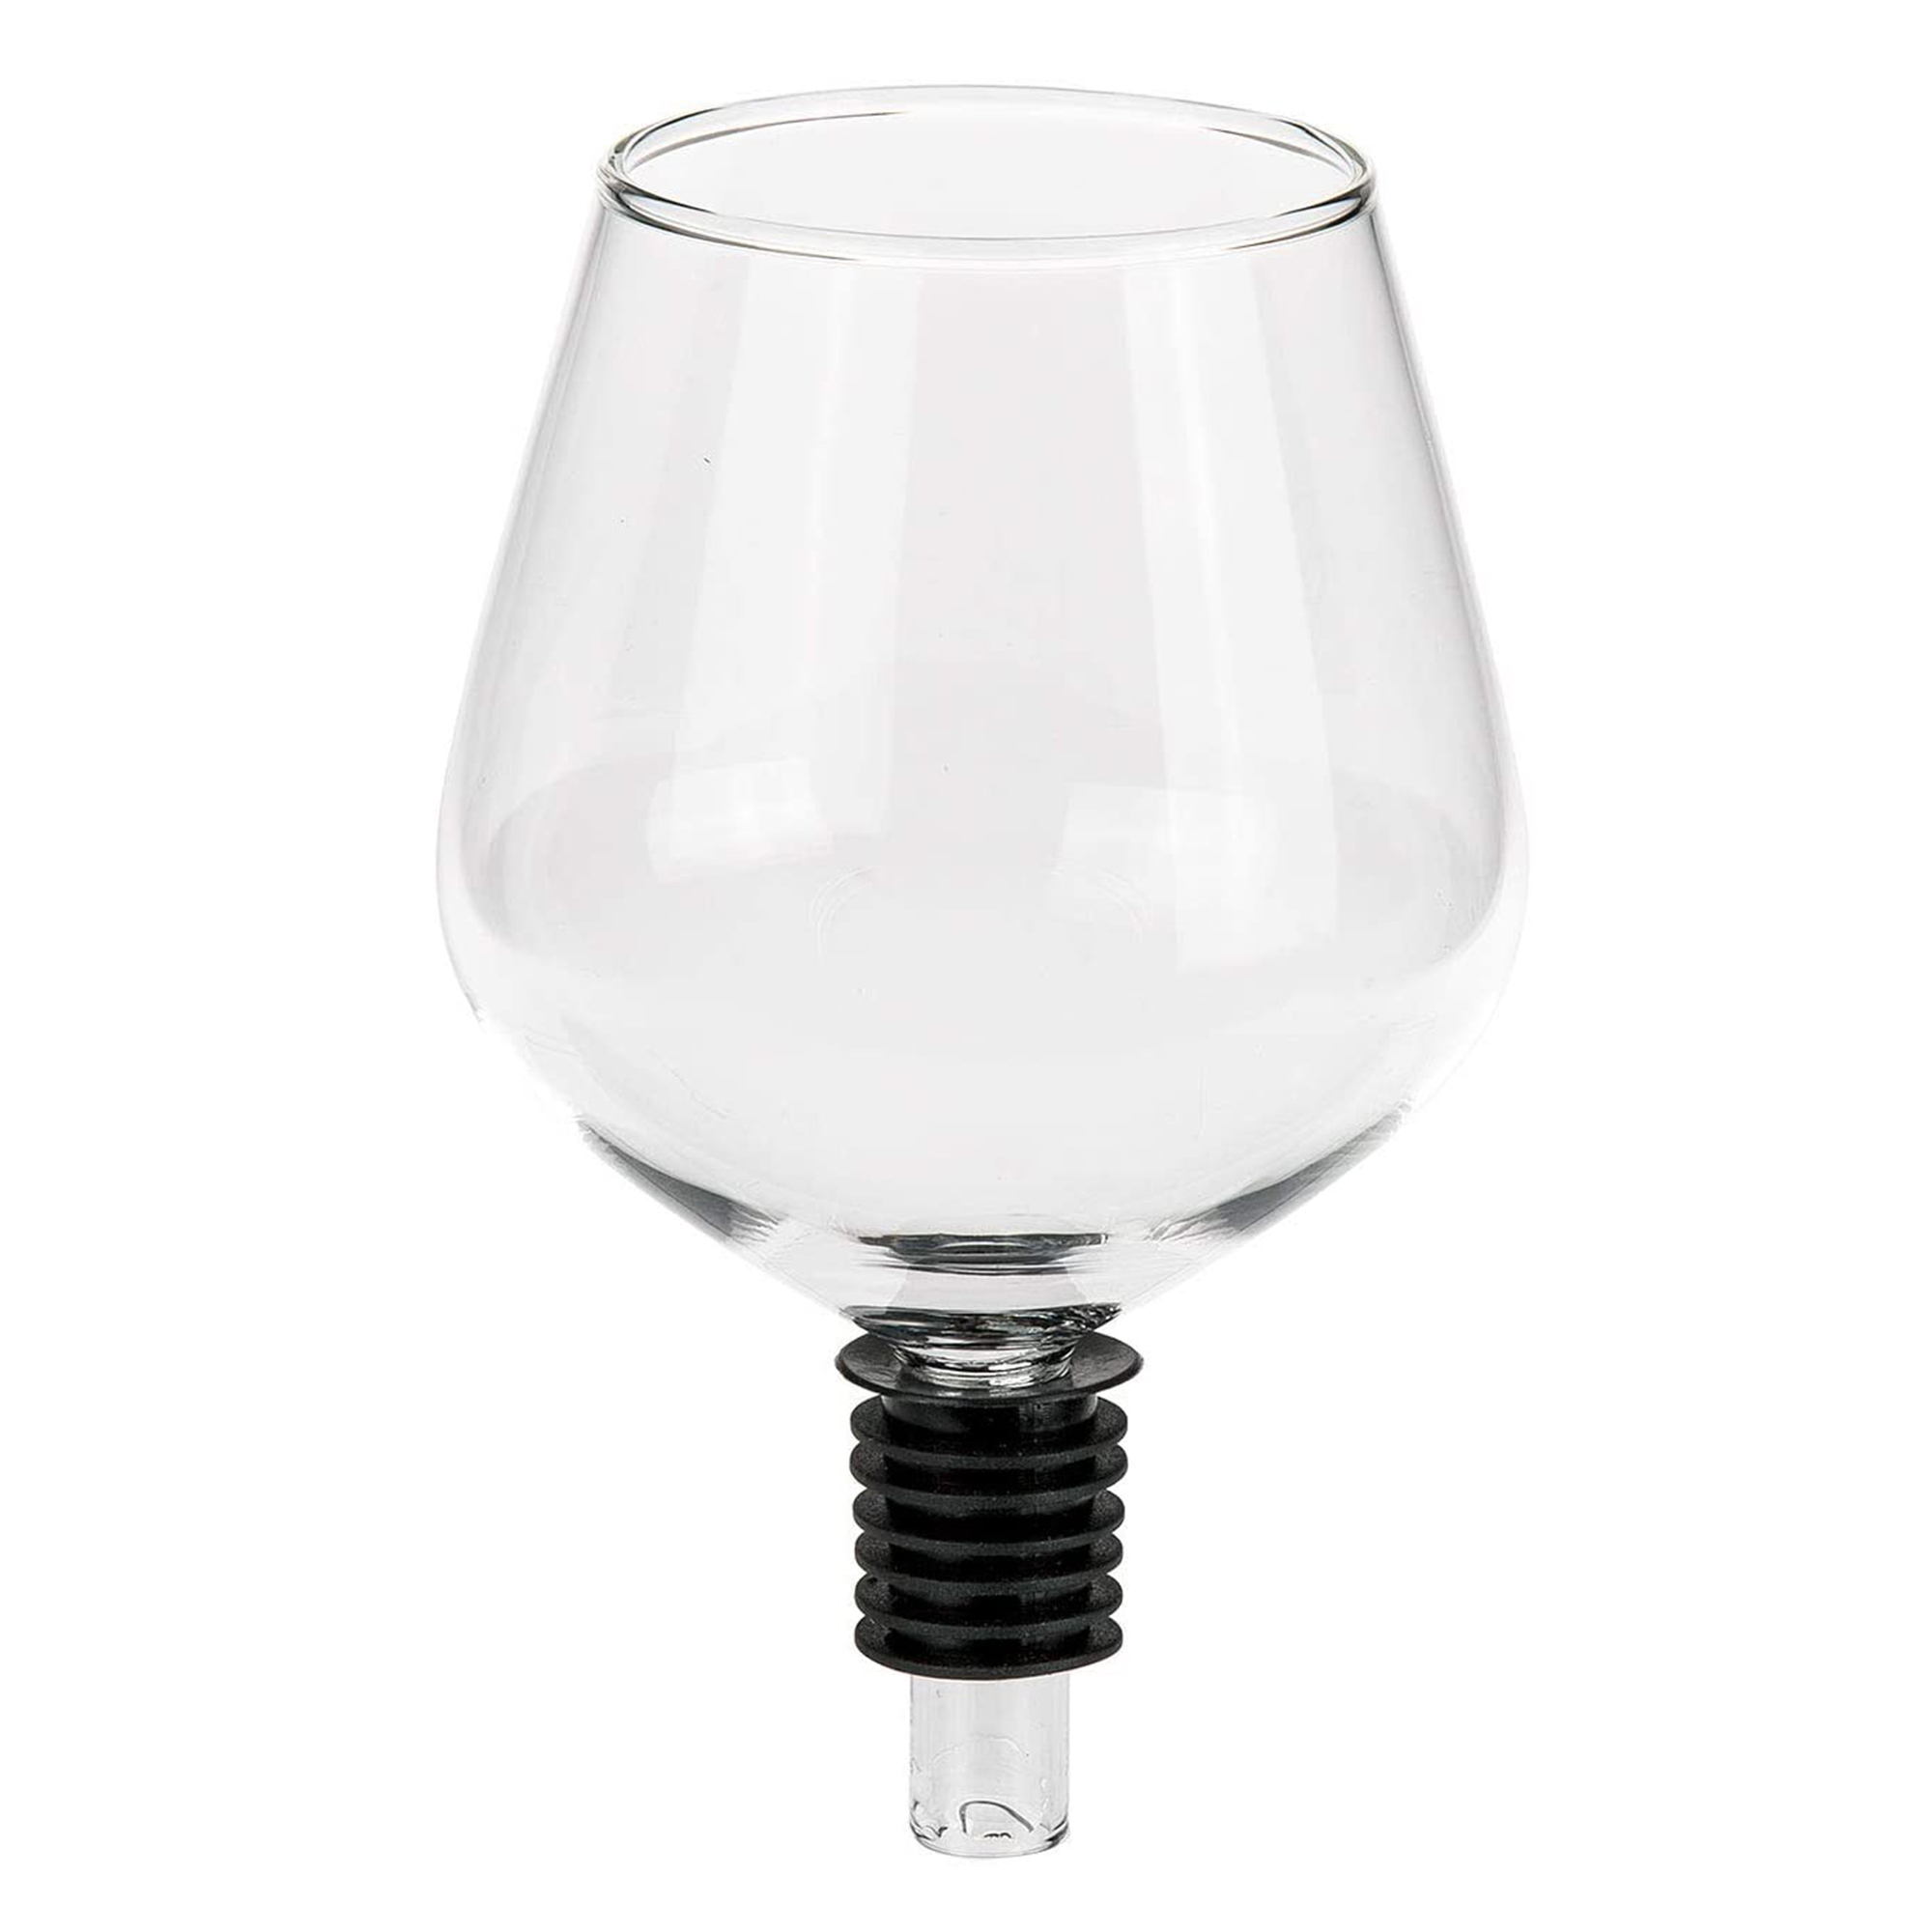 Flaschenaufsatz - Weinglas 3497 - 3